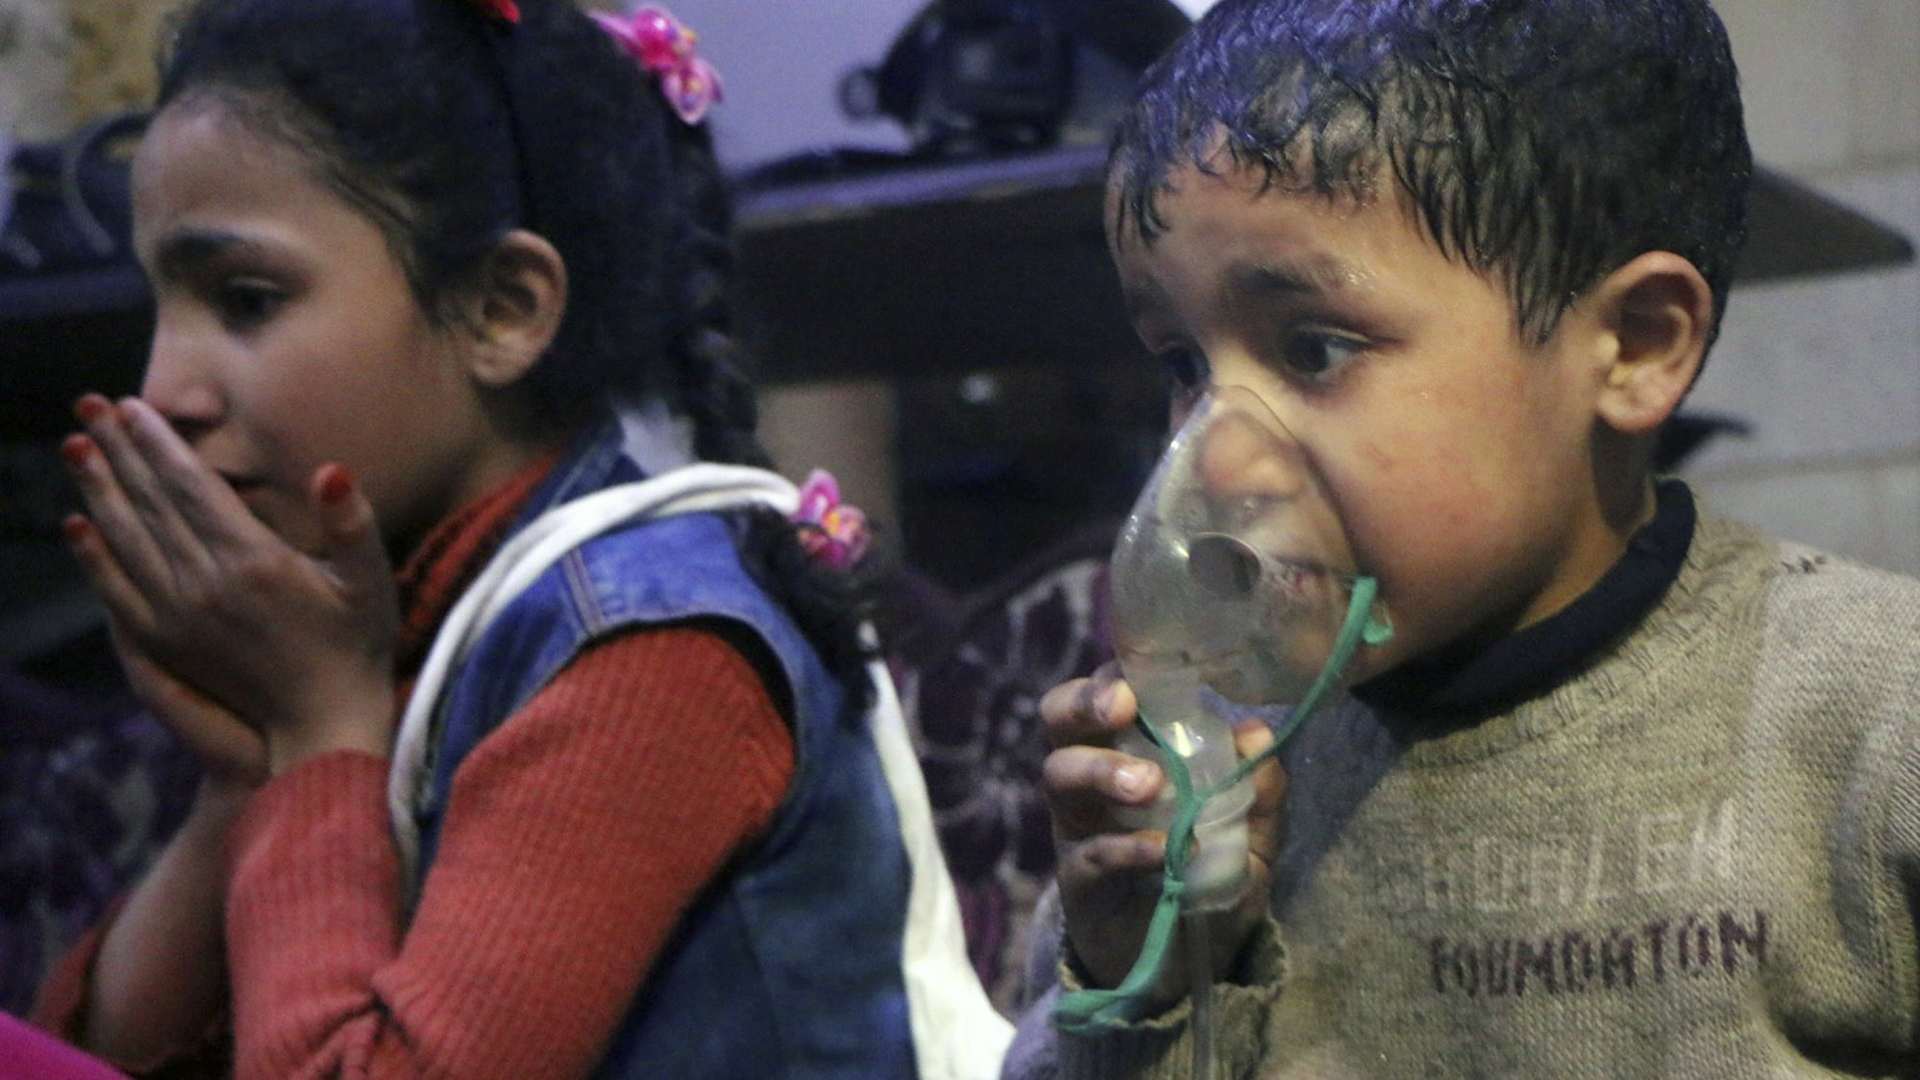 Das von der Hilfsorganisation Weißhelme veröffentlichte Foto zeigt einen kleinen Jungen, der sich eine Atemmaske auf das Gesicht drückt, neben ihm ein junges Mädchen.